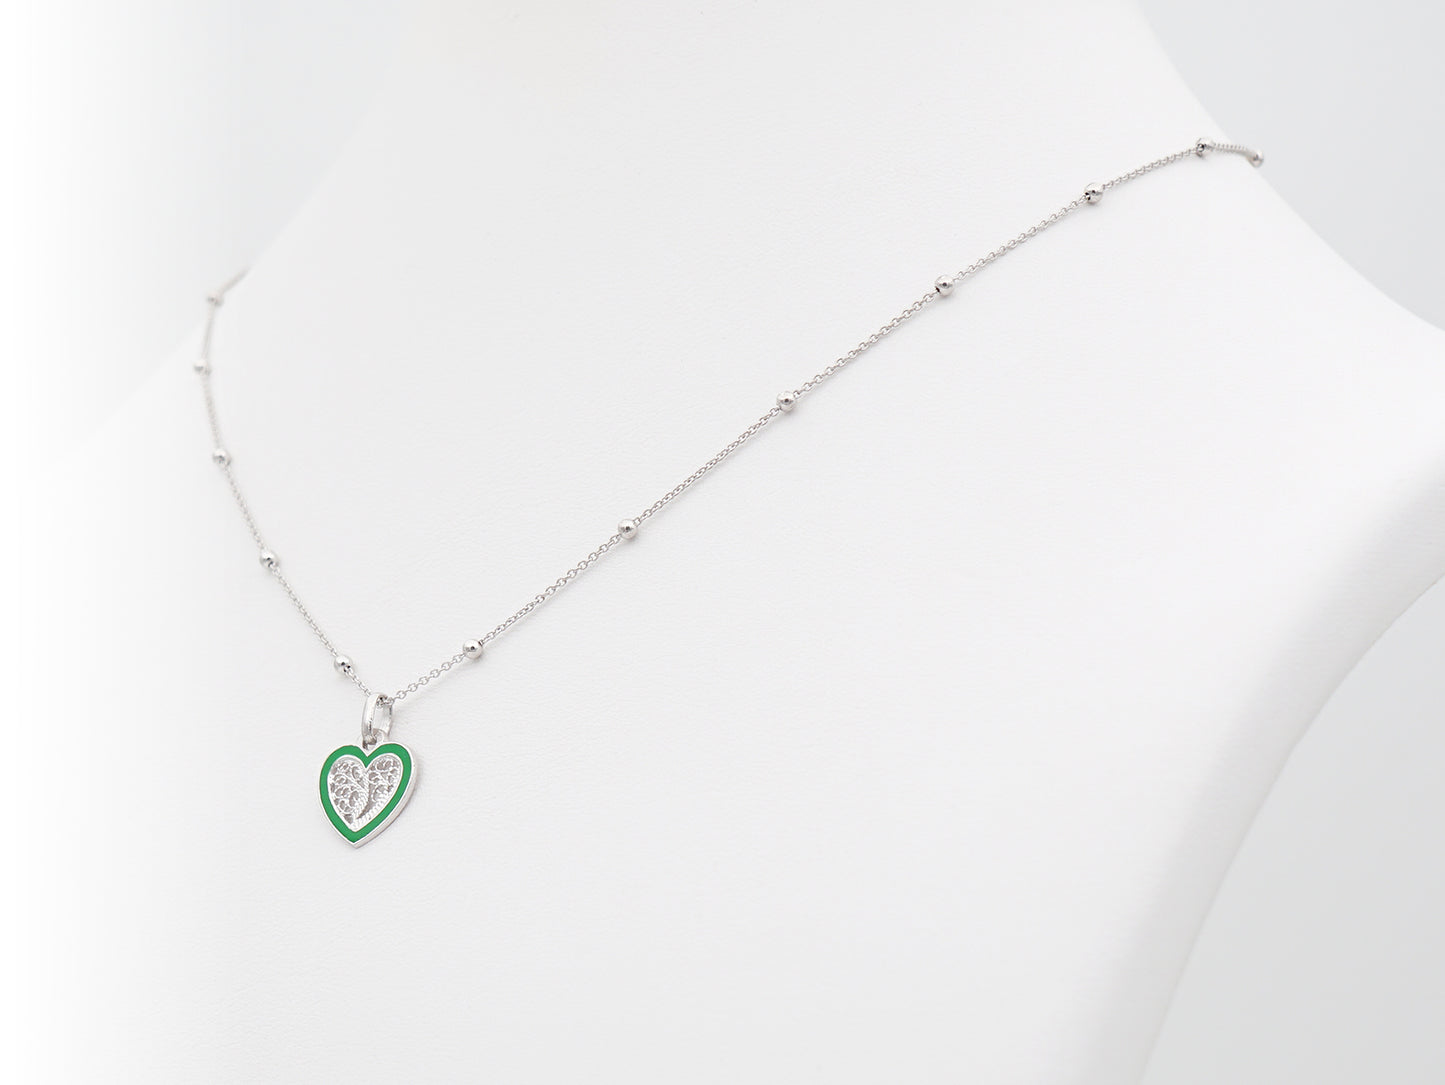 Colar Coração Pequeno Esmalte Verde, Filigrana Portuguesa, Prata de Lei 925 - Colar em exposição